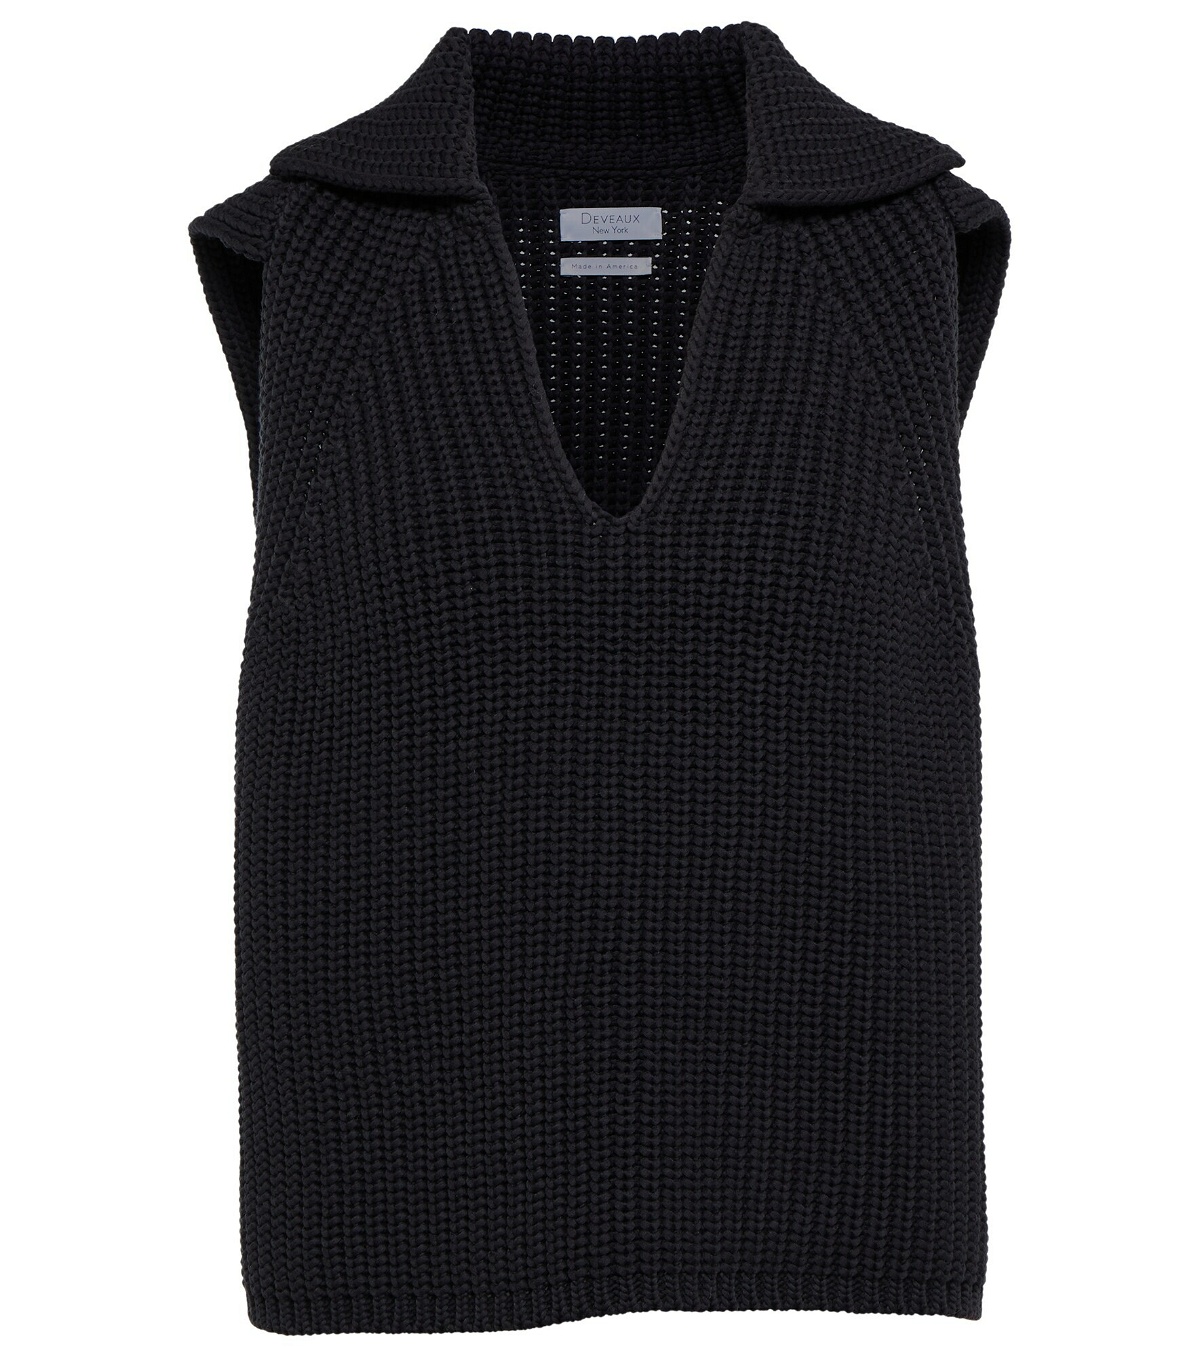 Deveaux New York - Ribbed-knit cotton-blend sweater vest Deveaux New York